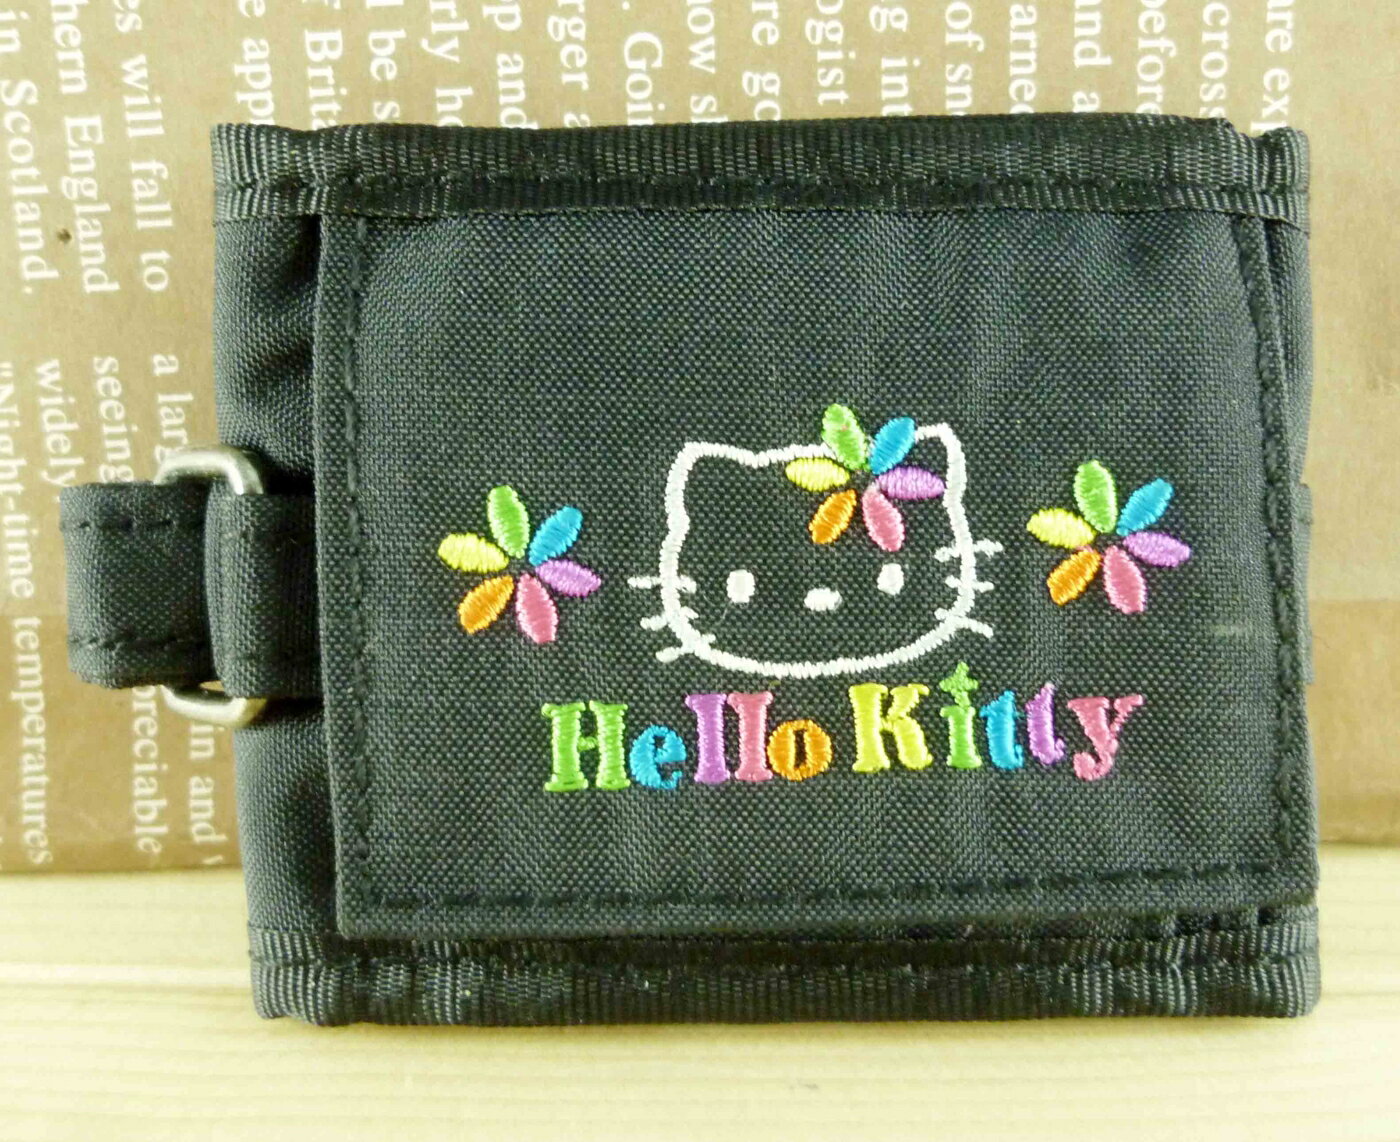 【震撼精品百貨】Hello Kitty 凱蒂貓-凱蒂貓零錢包-手腕型-黑色 震撼日式精品百貨